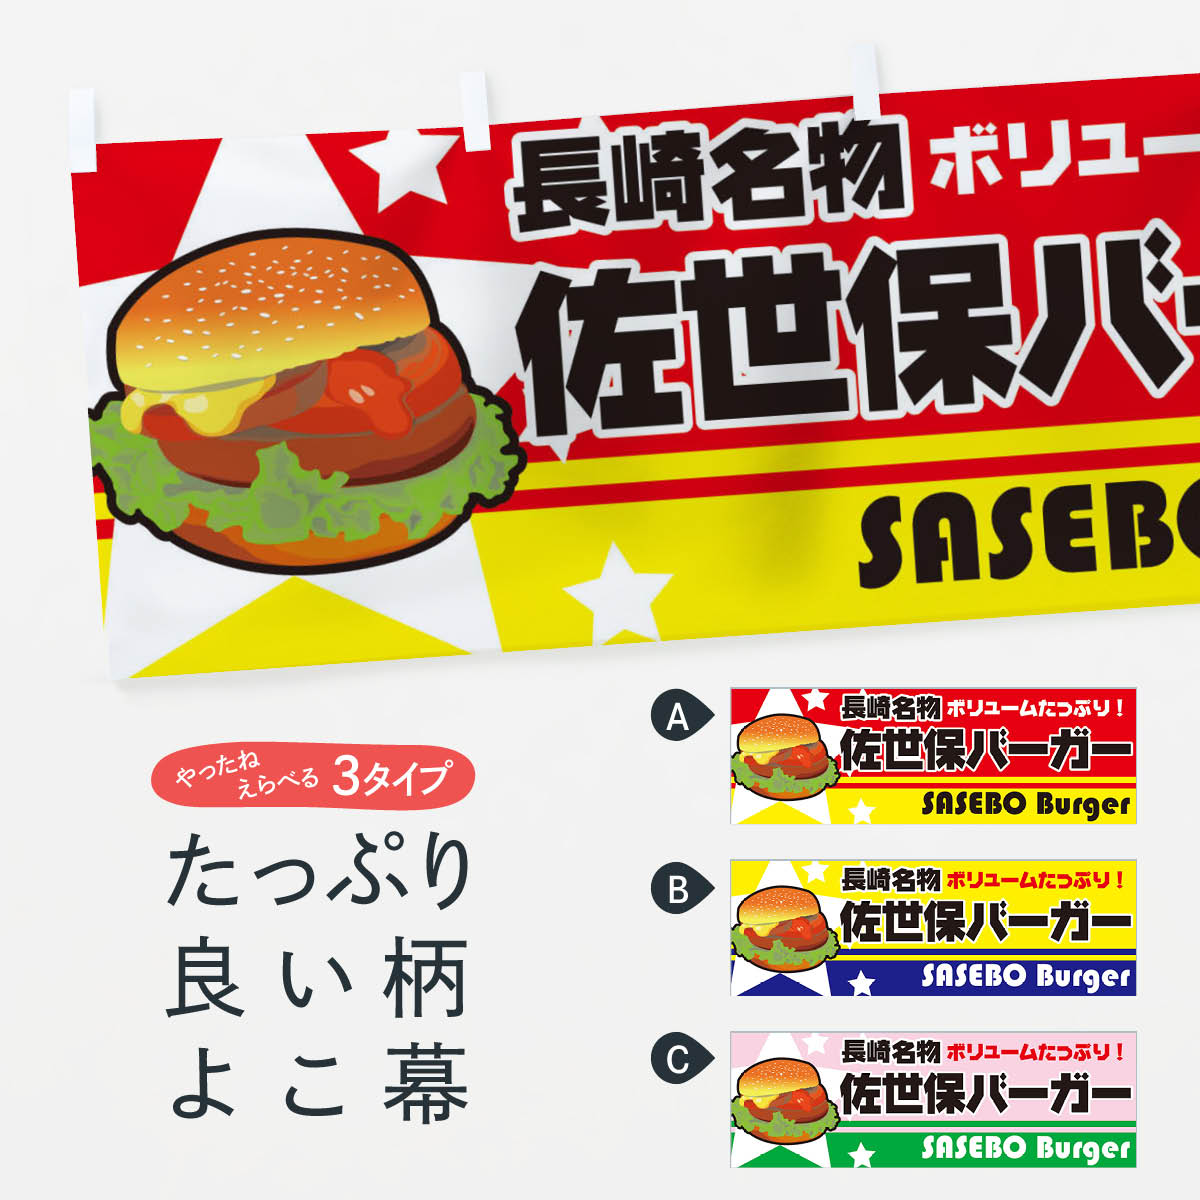 【ネコポス送料360】 横幕 佐世保バーガー 7711 長崎名物 ボリュームたっぷり SASEBO Burger